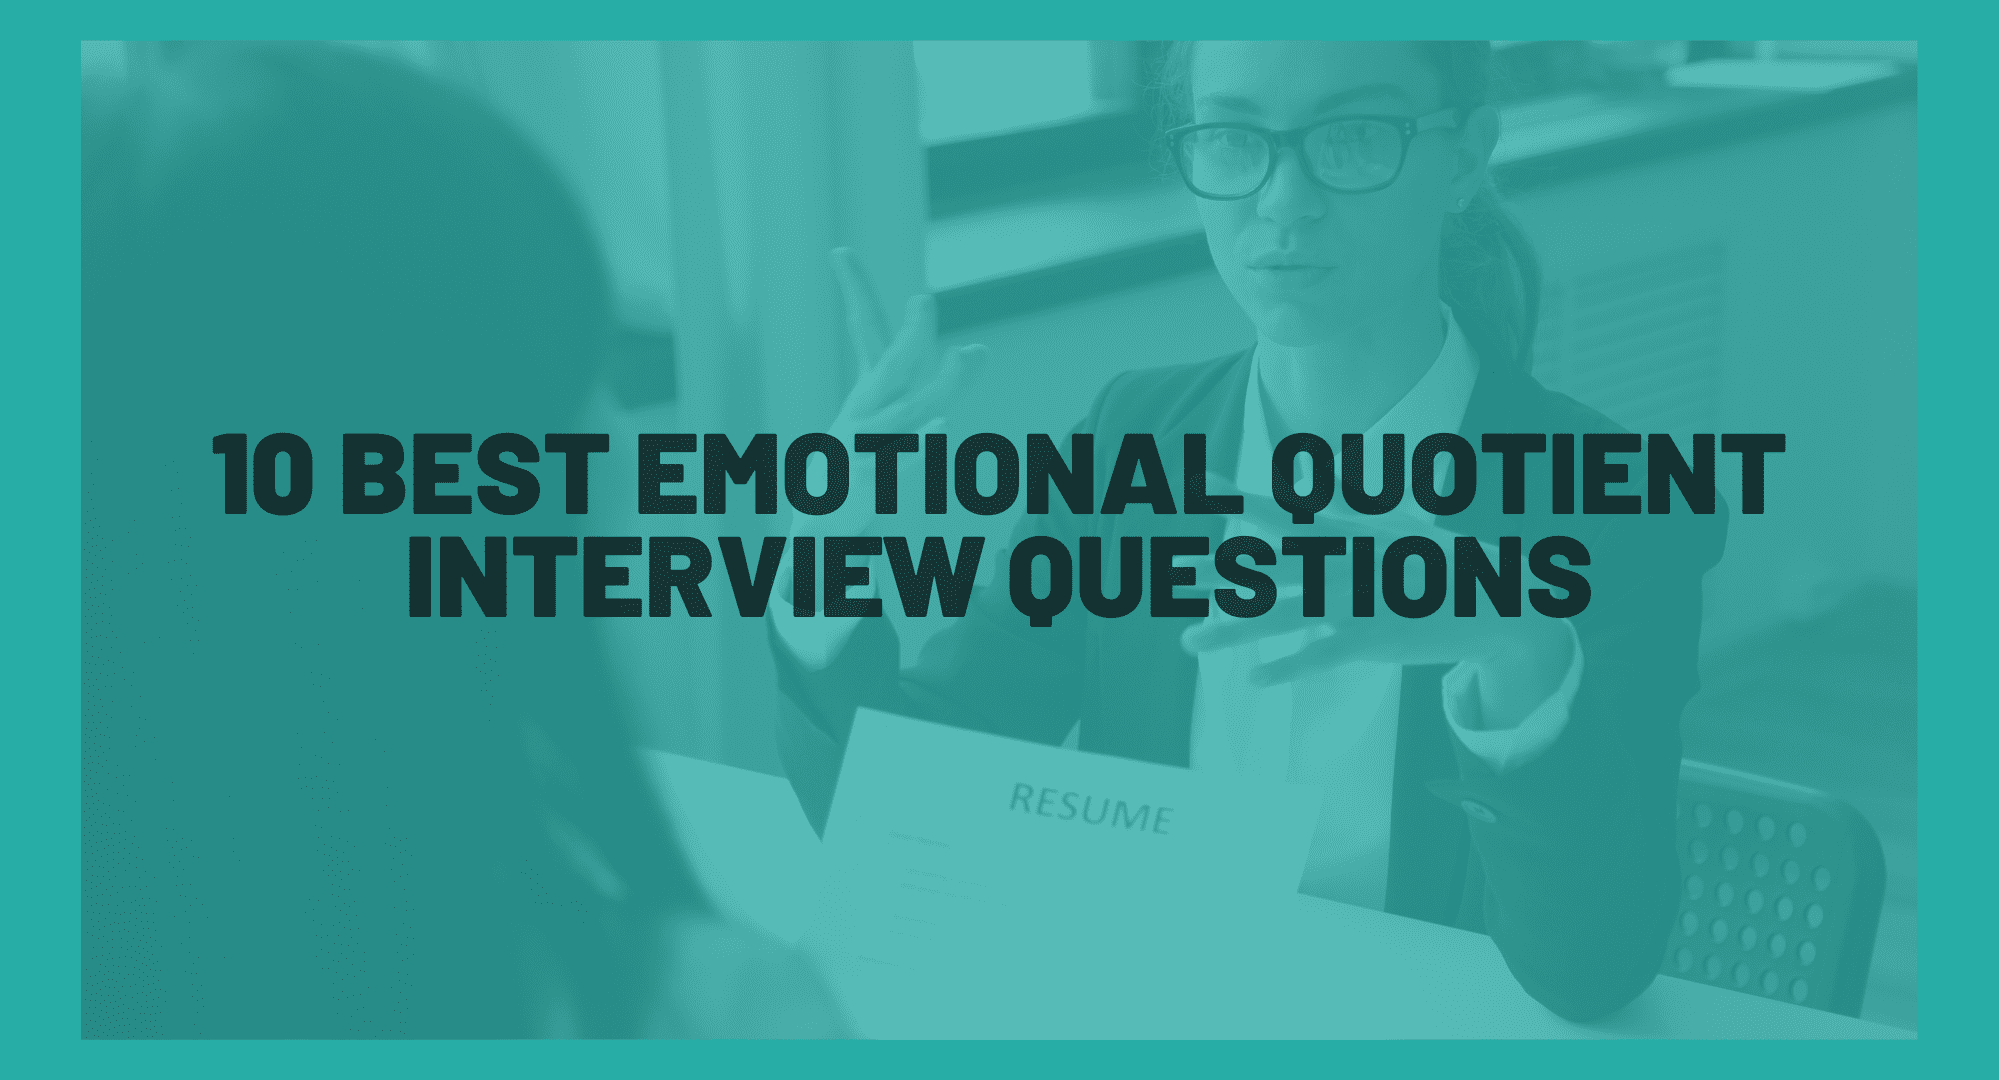 10 Best Emotional Quotient Interview Questions. Best interview questions to test your candidates' EQ. Best questions to analyze EQ of candidates.